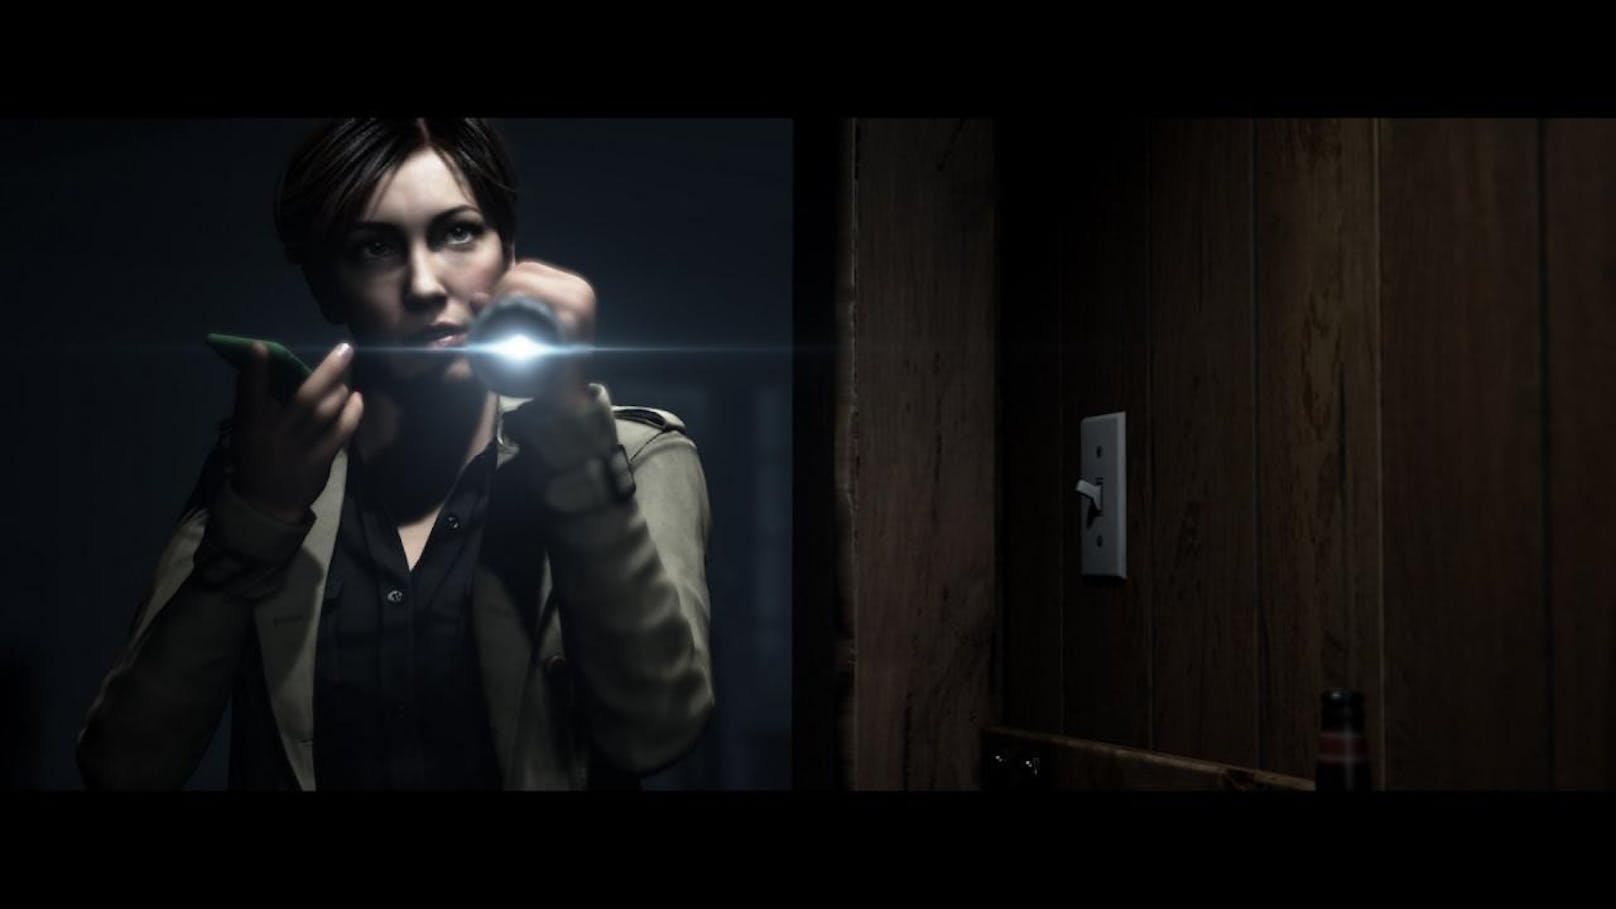 Das Spiel orientiert sich nicht nur bei der Engine am Horror-Game Until Dawn, sondern nimmt auch optisch dessen Charaktere und teils das Gameplay auf.